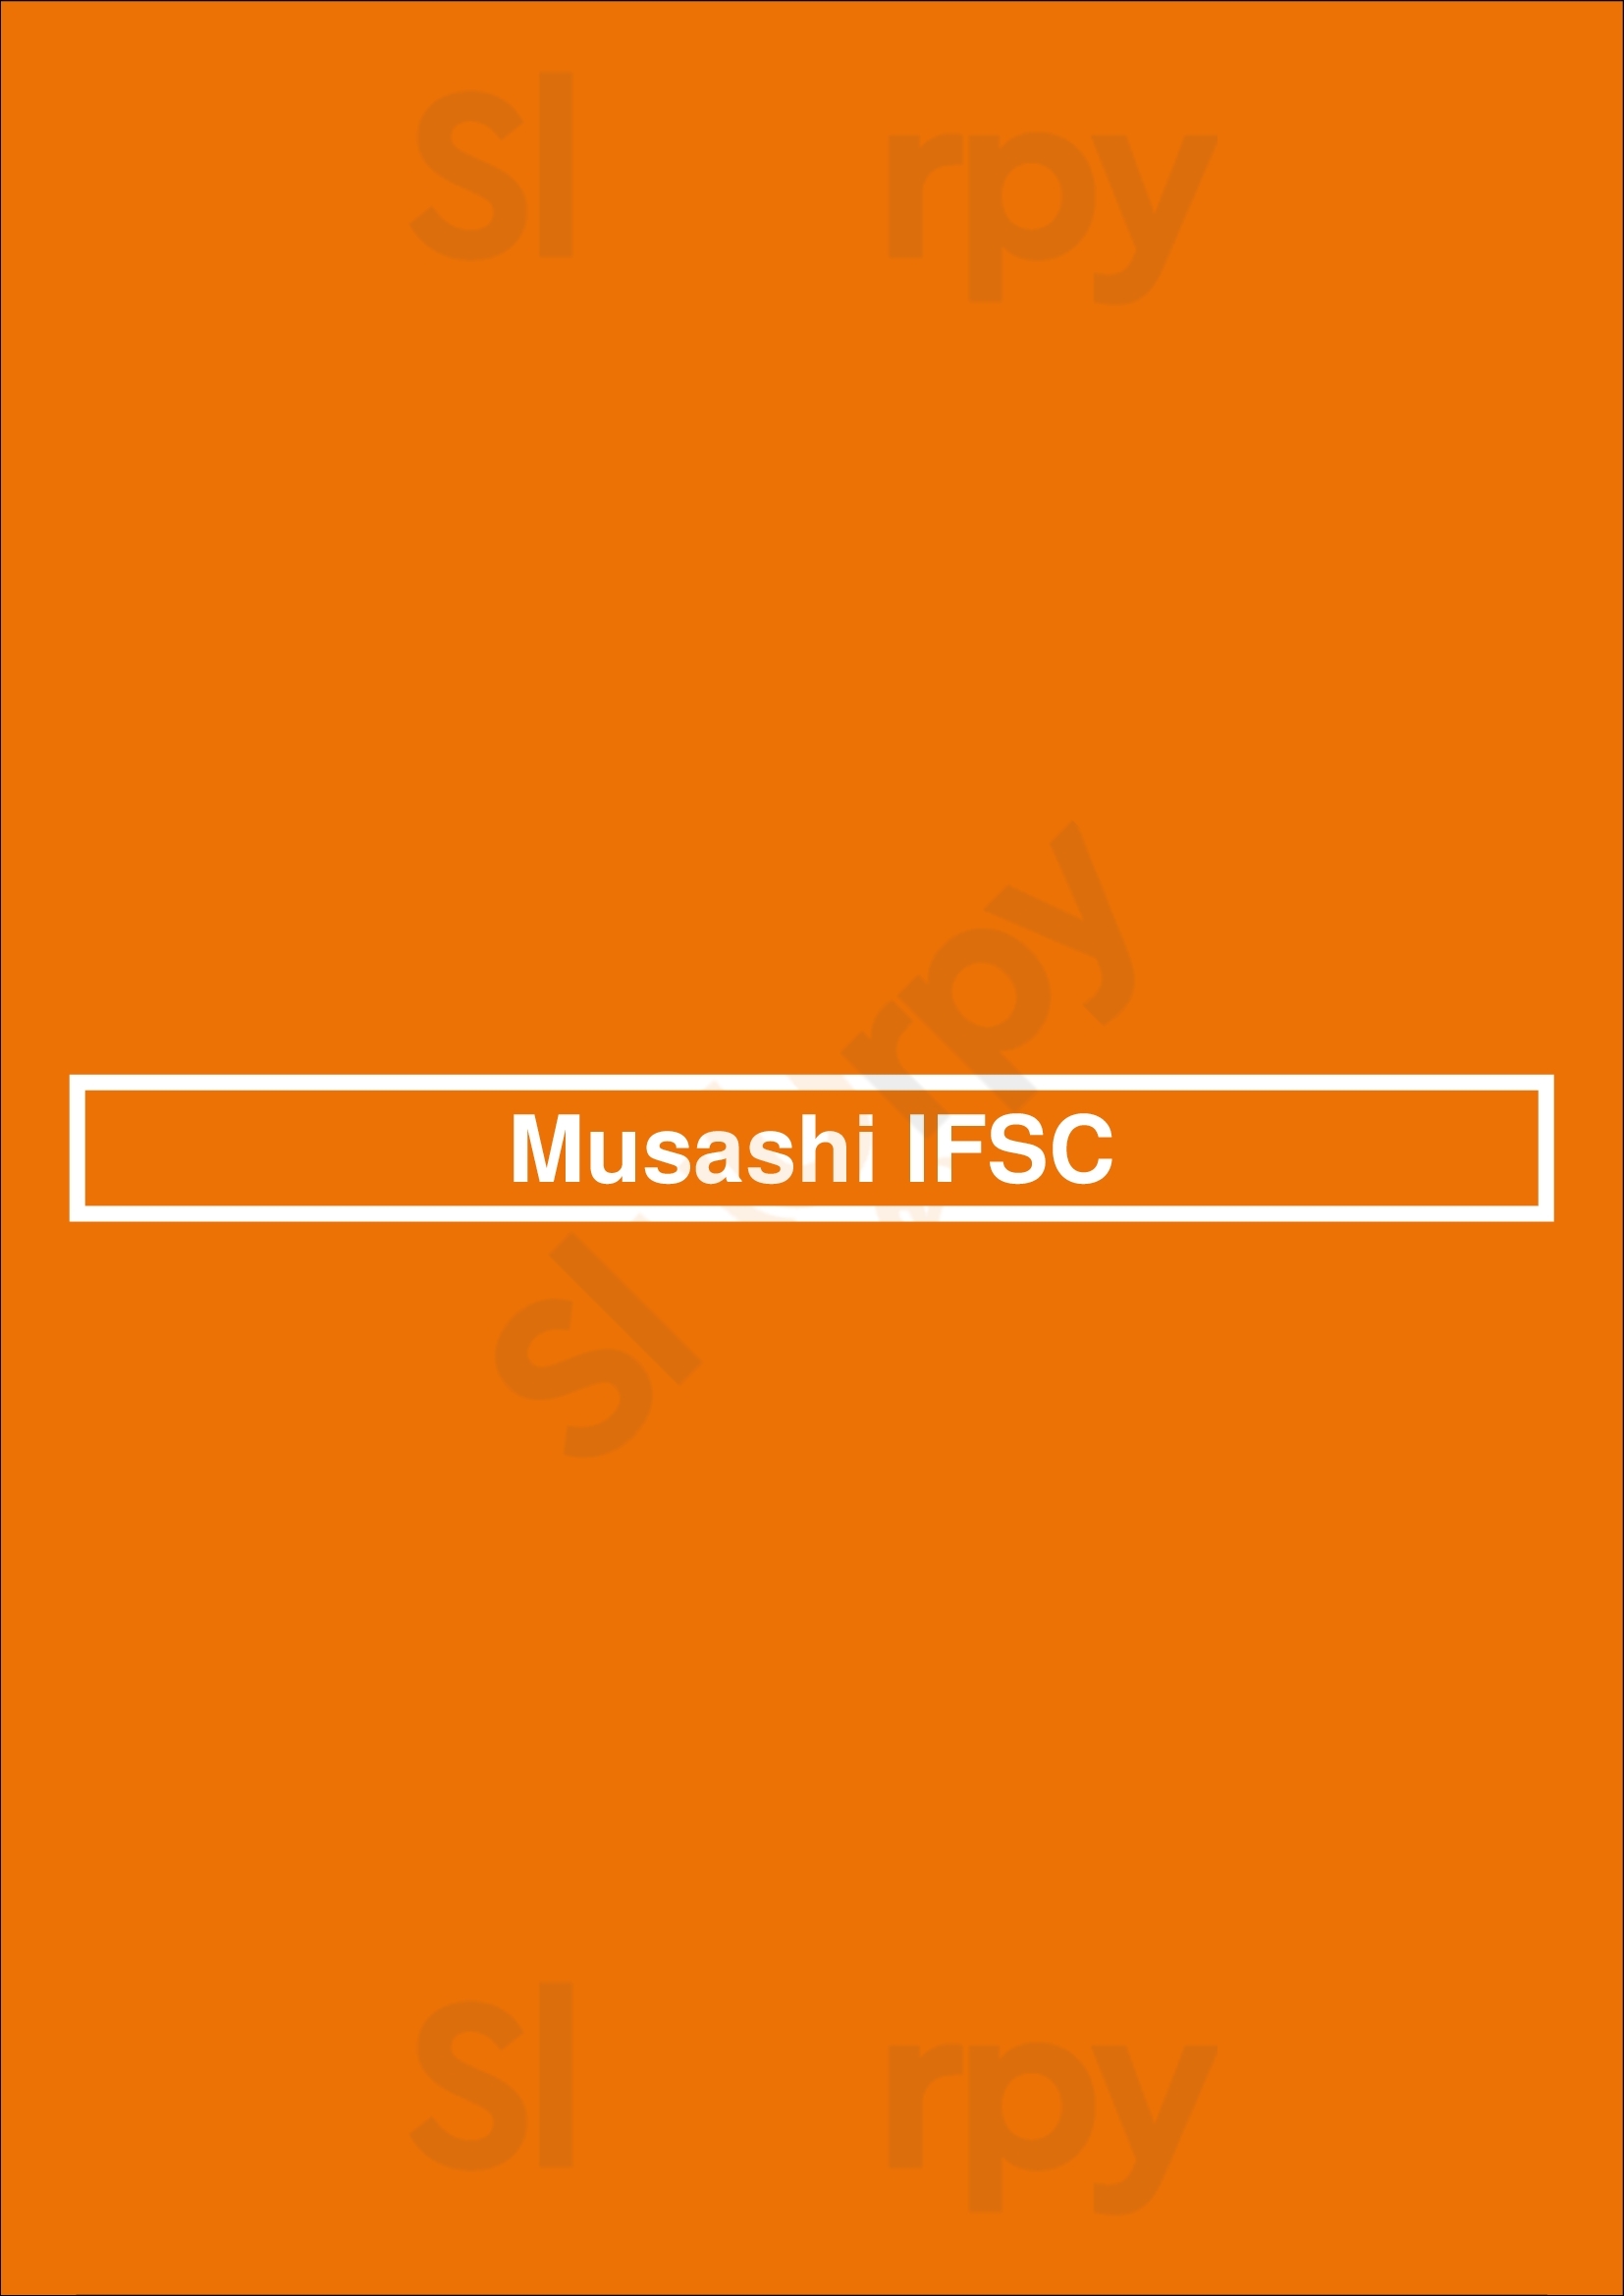 Musashi Ifsc Dublin Menu - 1